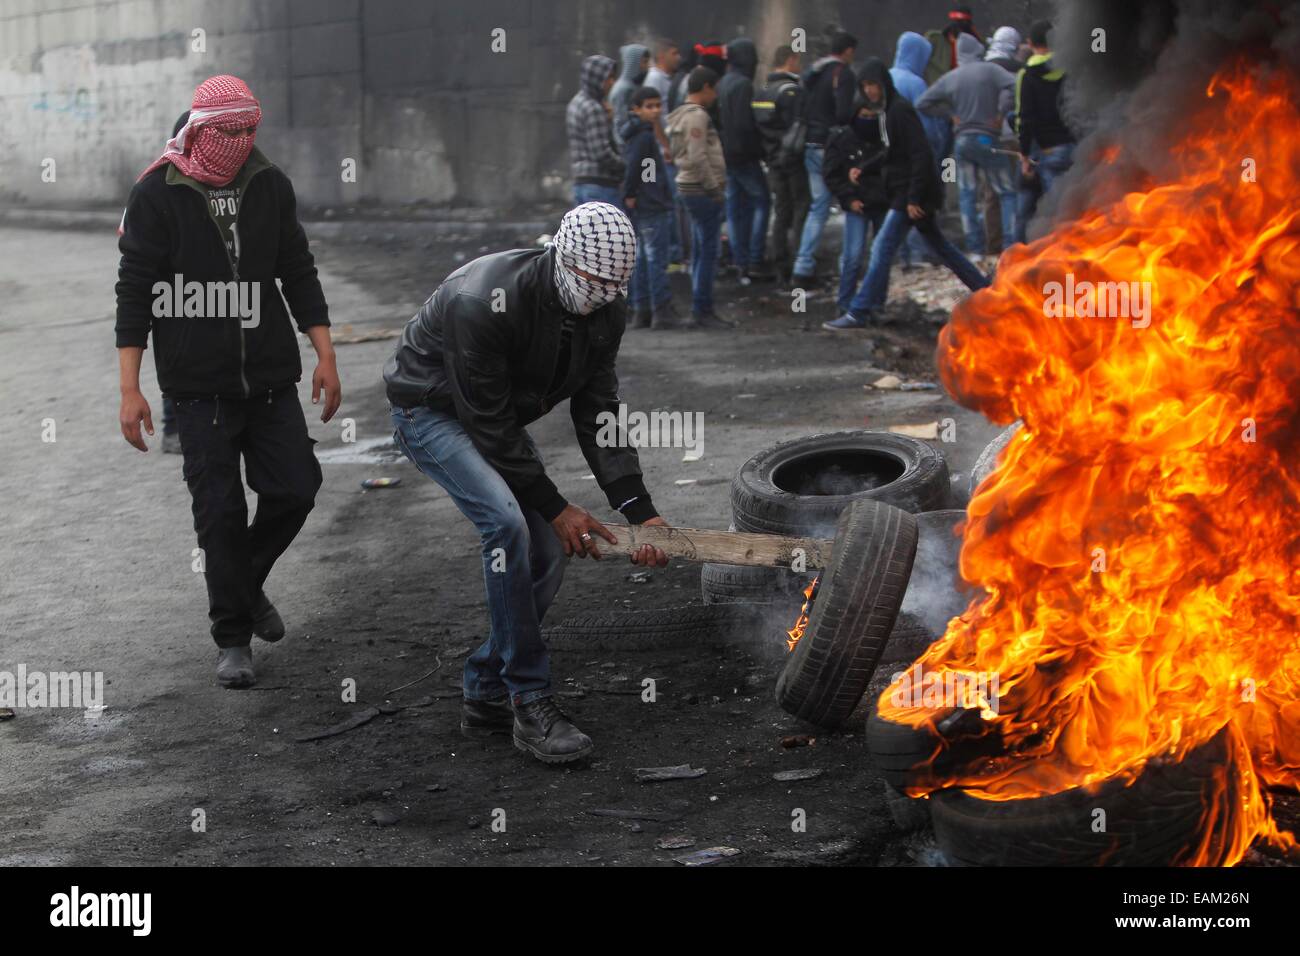 (141117) -- Jérusalem, le 17 novembre 2014 (Xinhua) -- les jeunes Palestiniens masqués brûlent des pneus près de la barrière controversée qui sépare la ville d'Abu Dis, près de Jérusalem, un jour après qu'un chauffeur de bus palestinien, dont la famille vit à Abu Dis, a été trouvé pendu dans son véhicule à Jérusalem, le 17 novembre 2014. Un chauffeur palestinien a été trouvé pendu à l'intérieur de son véhicule à Jérusalem, un incident palestiniens faute sur 'les colons juifs', tandis qu'Israël a dit que c'était un suicide apparent. Tard dimanche soir, le corps de Yusuf Hassan al-Ramouni, 32 ans, a été découvert pendu à l'intérieur d'un bus garé à l'autobus de Jérusalem Banque D'Images